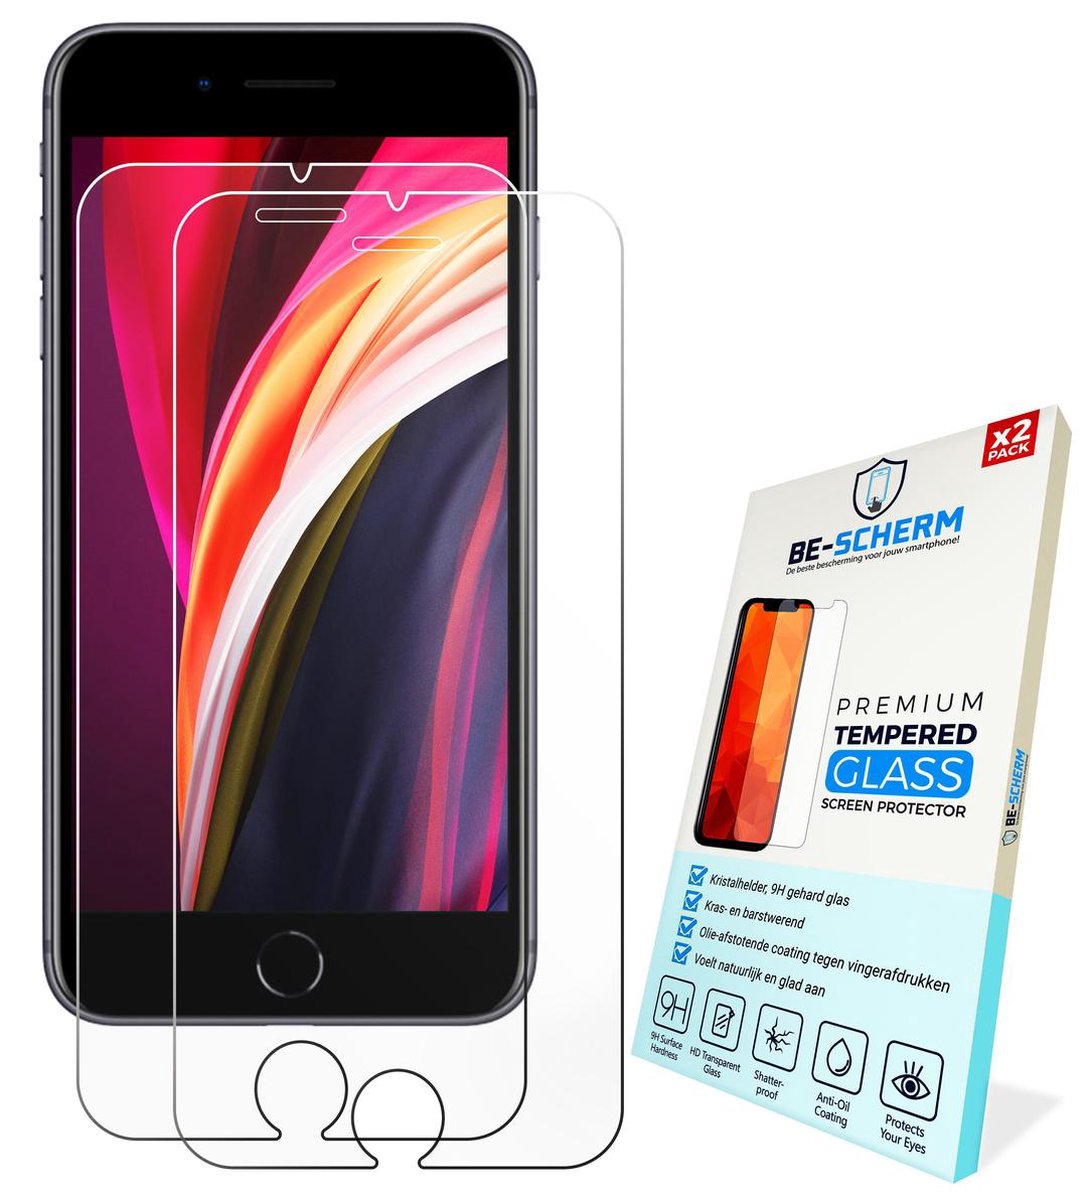 Bear Village® Vetro Temperato per iPhone SE 2020 /iPhone 8 /iPhone 7 Anti-Impronte 9H Durezza Pellicola Protettiva in Vetro Temperato per iPhone 6S / iPhone 6 3 Pezzi HD Trasparente 